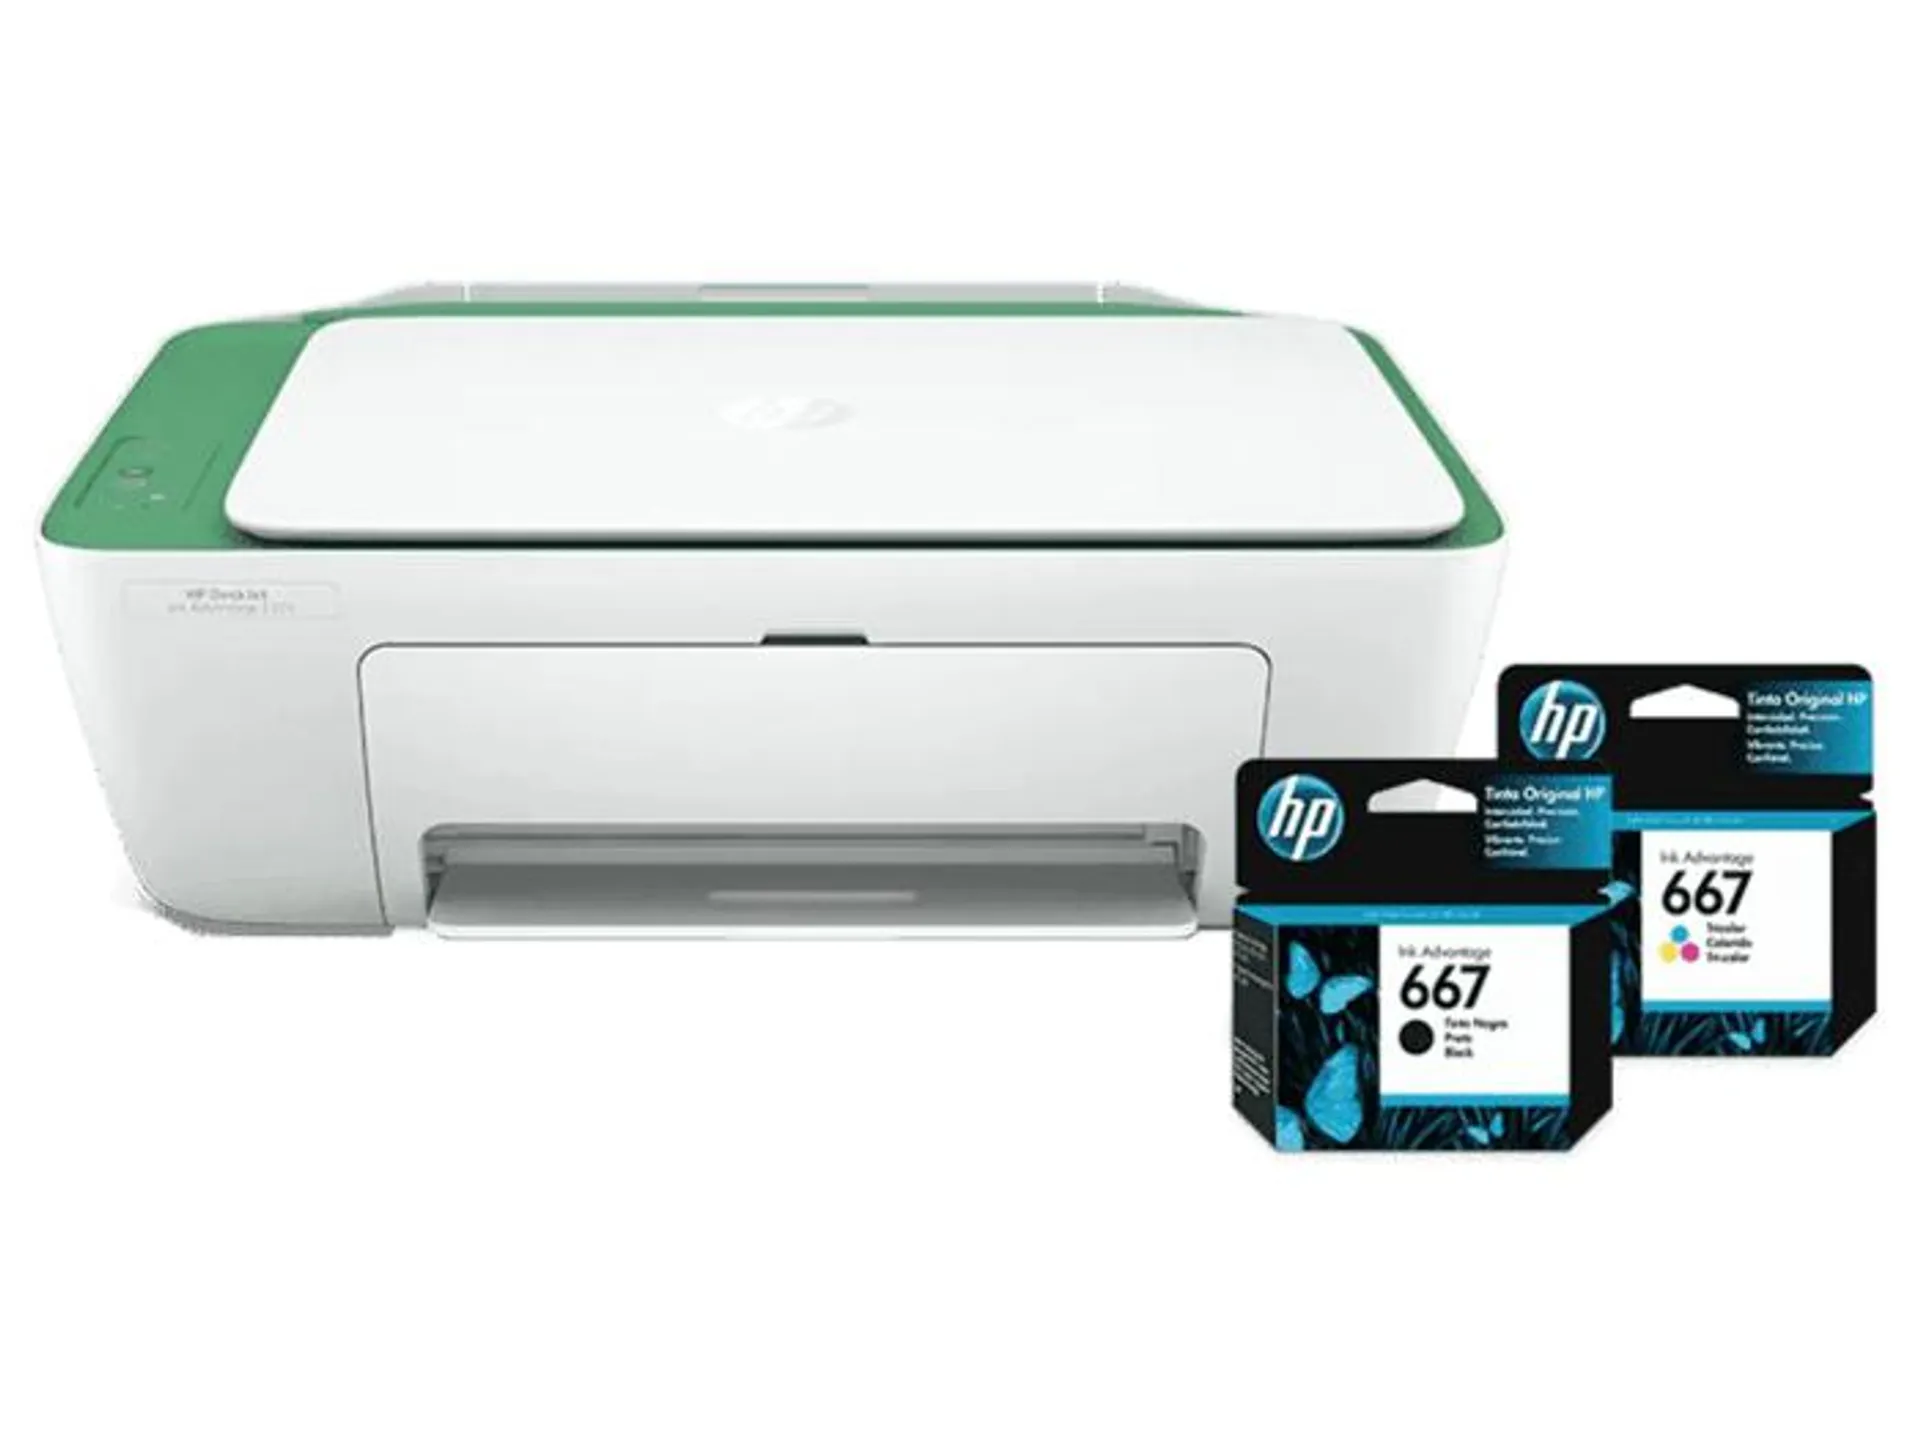 Impresora HP DeskJet Ink Adv 2375 + Cartuchos de Tinta HP 667 Negro Original y Tricolor Original